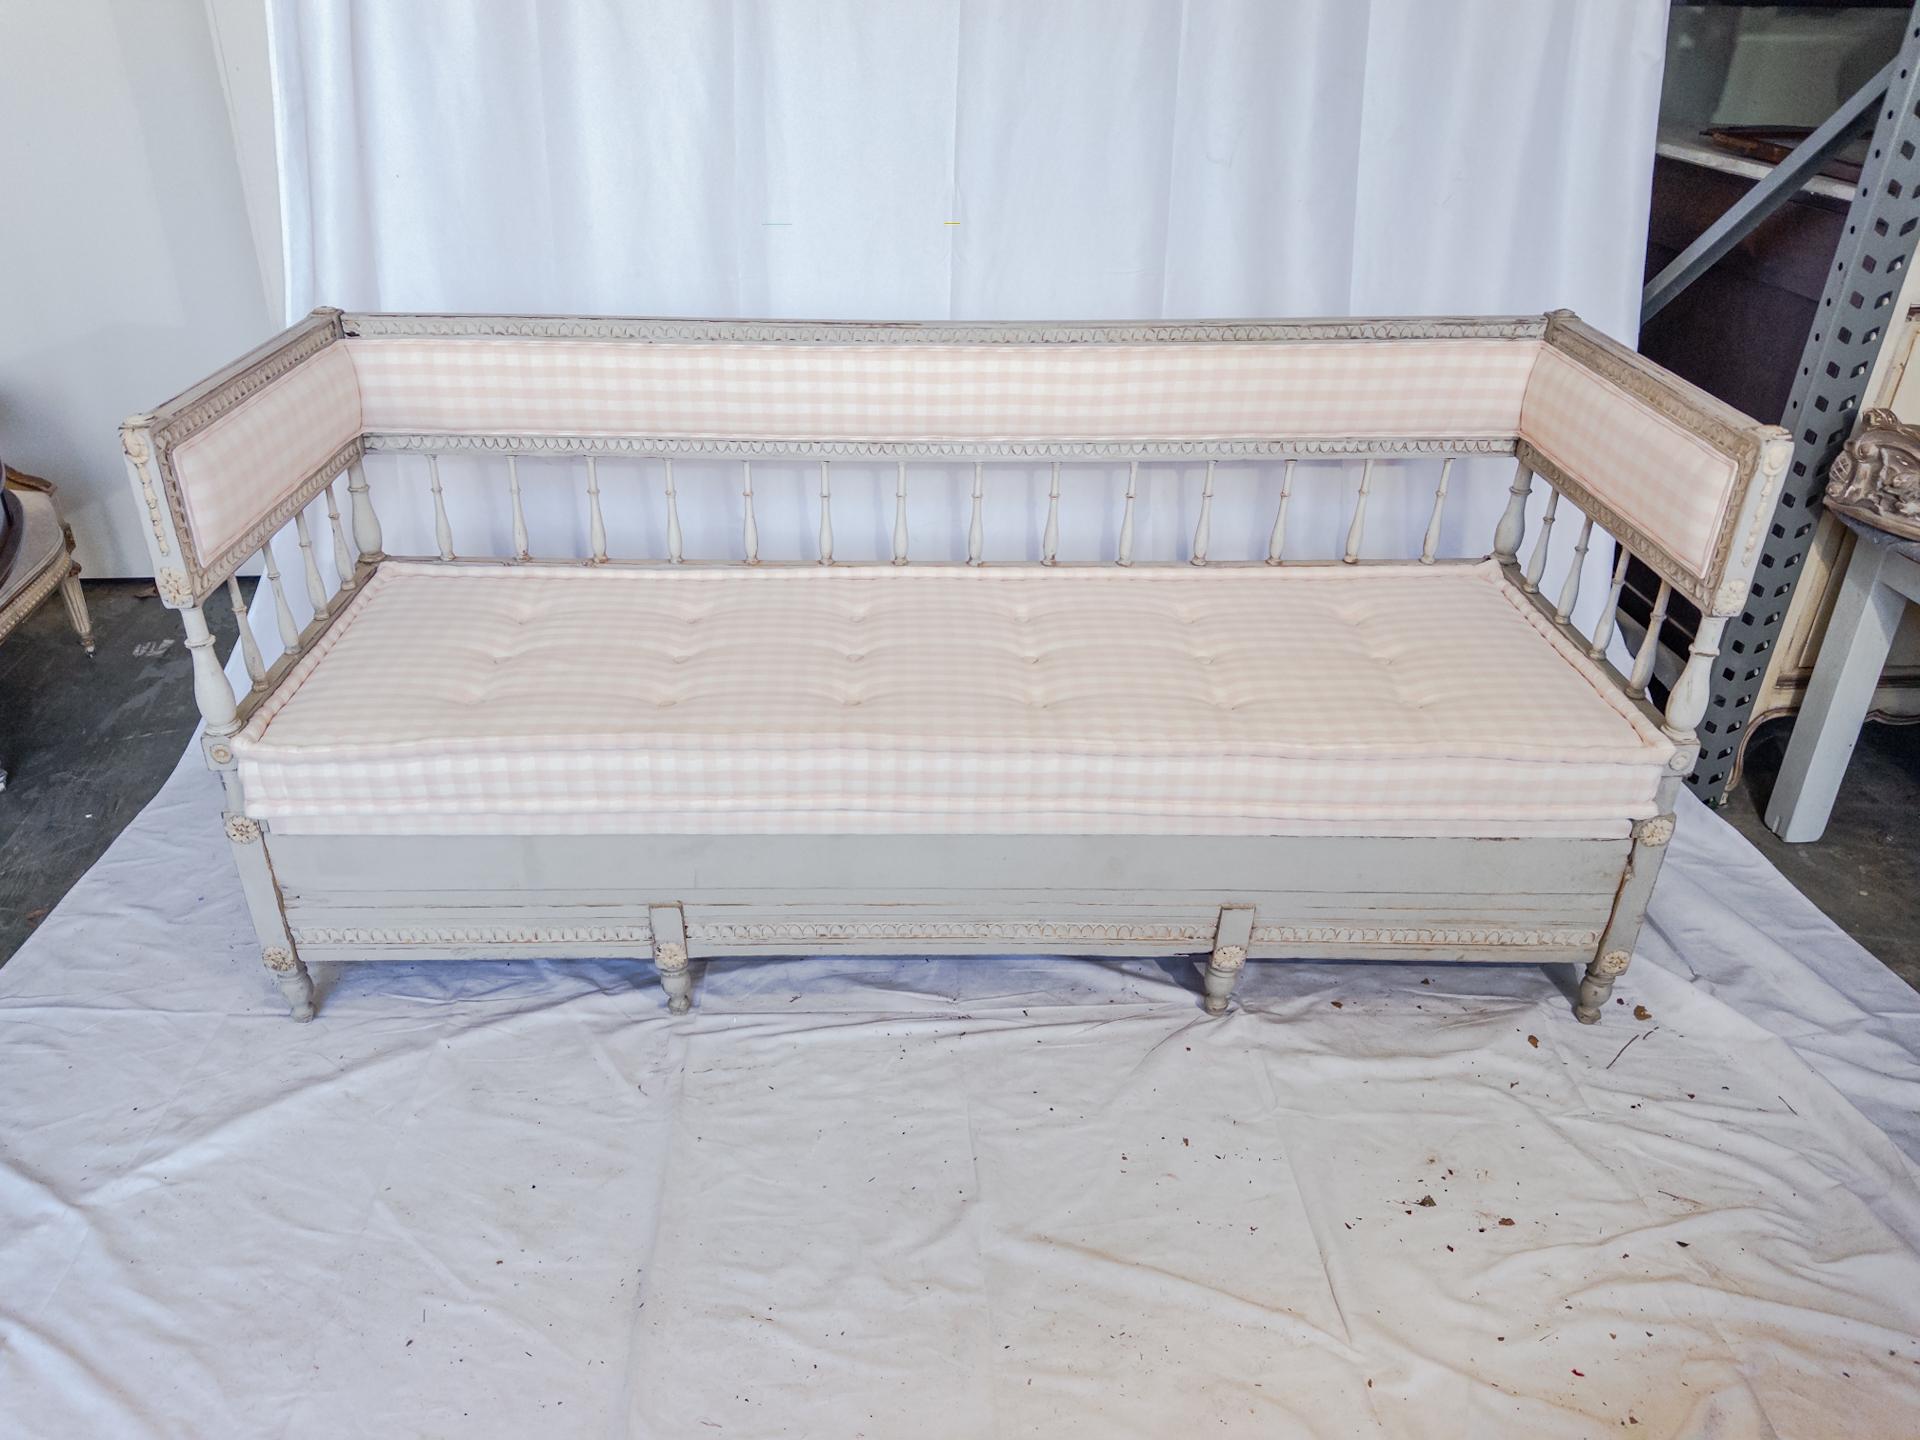 Dans l'univers opulent du design suédois du XIXe siècle, le canapé peint de style Gustavien incarne l'élégance et le savoir-faire. Cette magnifique pièce, née au cœur de la Suède, présente des bordures délicatement sculptées qui en disent long sur